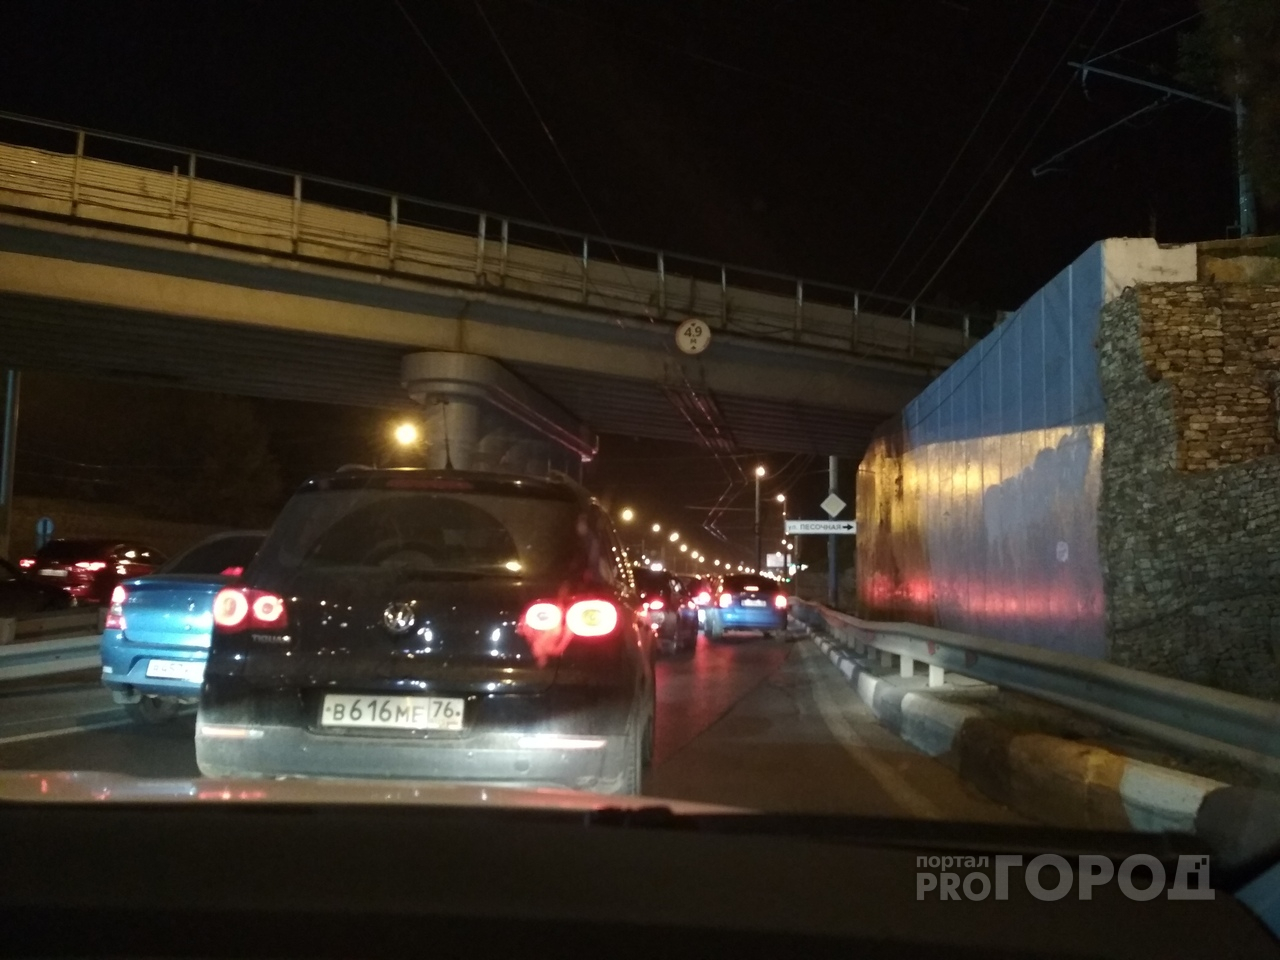 Круглосуточные пробки в Ярославле: Московский стоит даже ночью